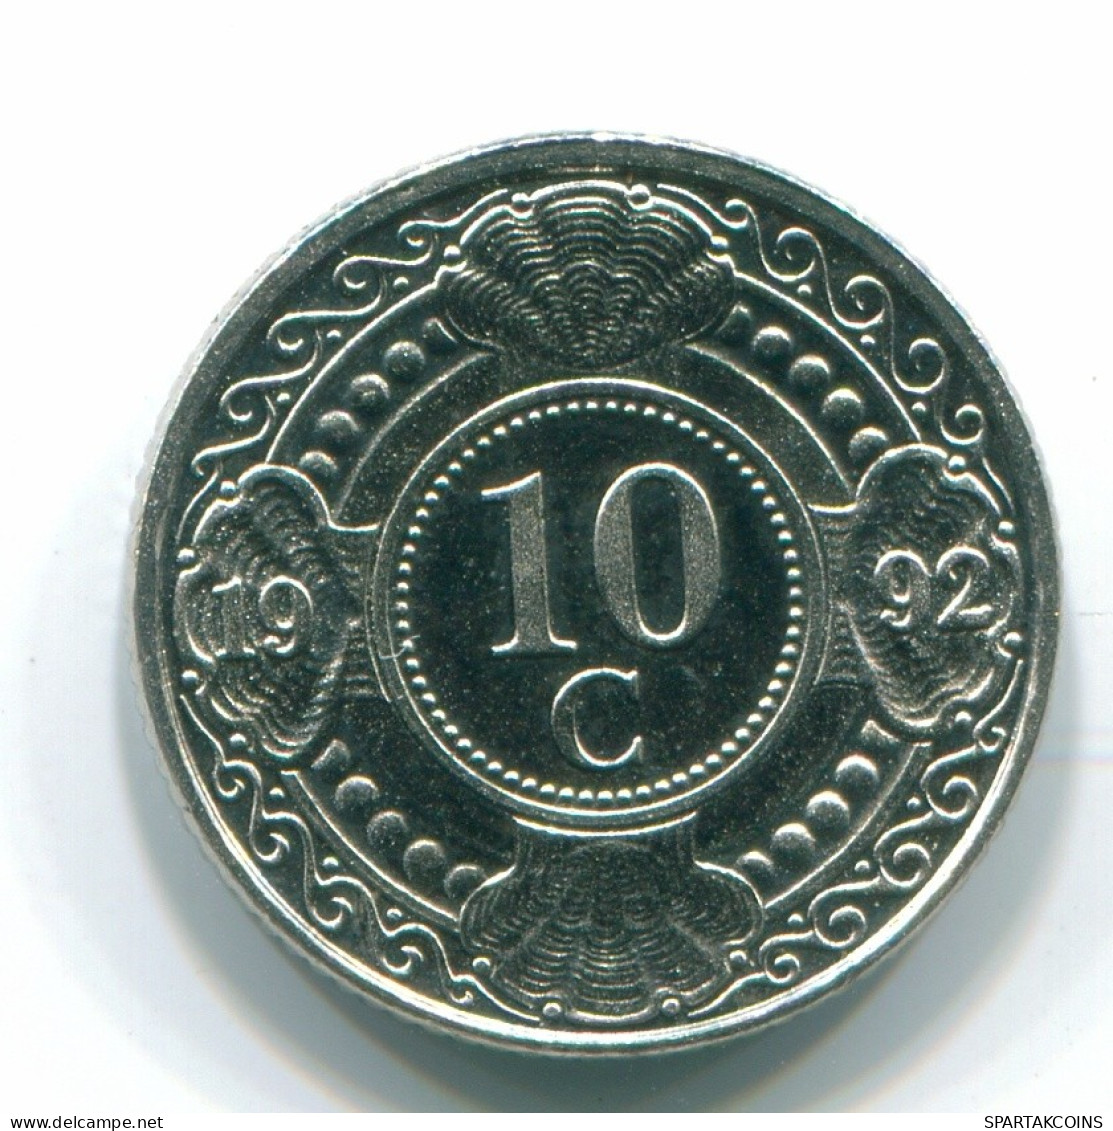 10 CENTS 1992 NETHERLANDS ANTILLES Nickel Colonial Coin #S11356.U.A - Antillas Neerlandesas